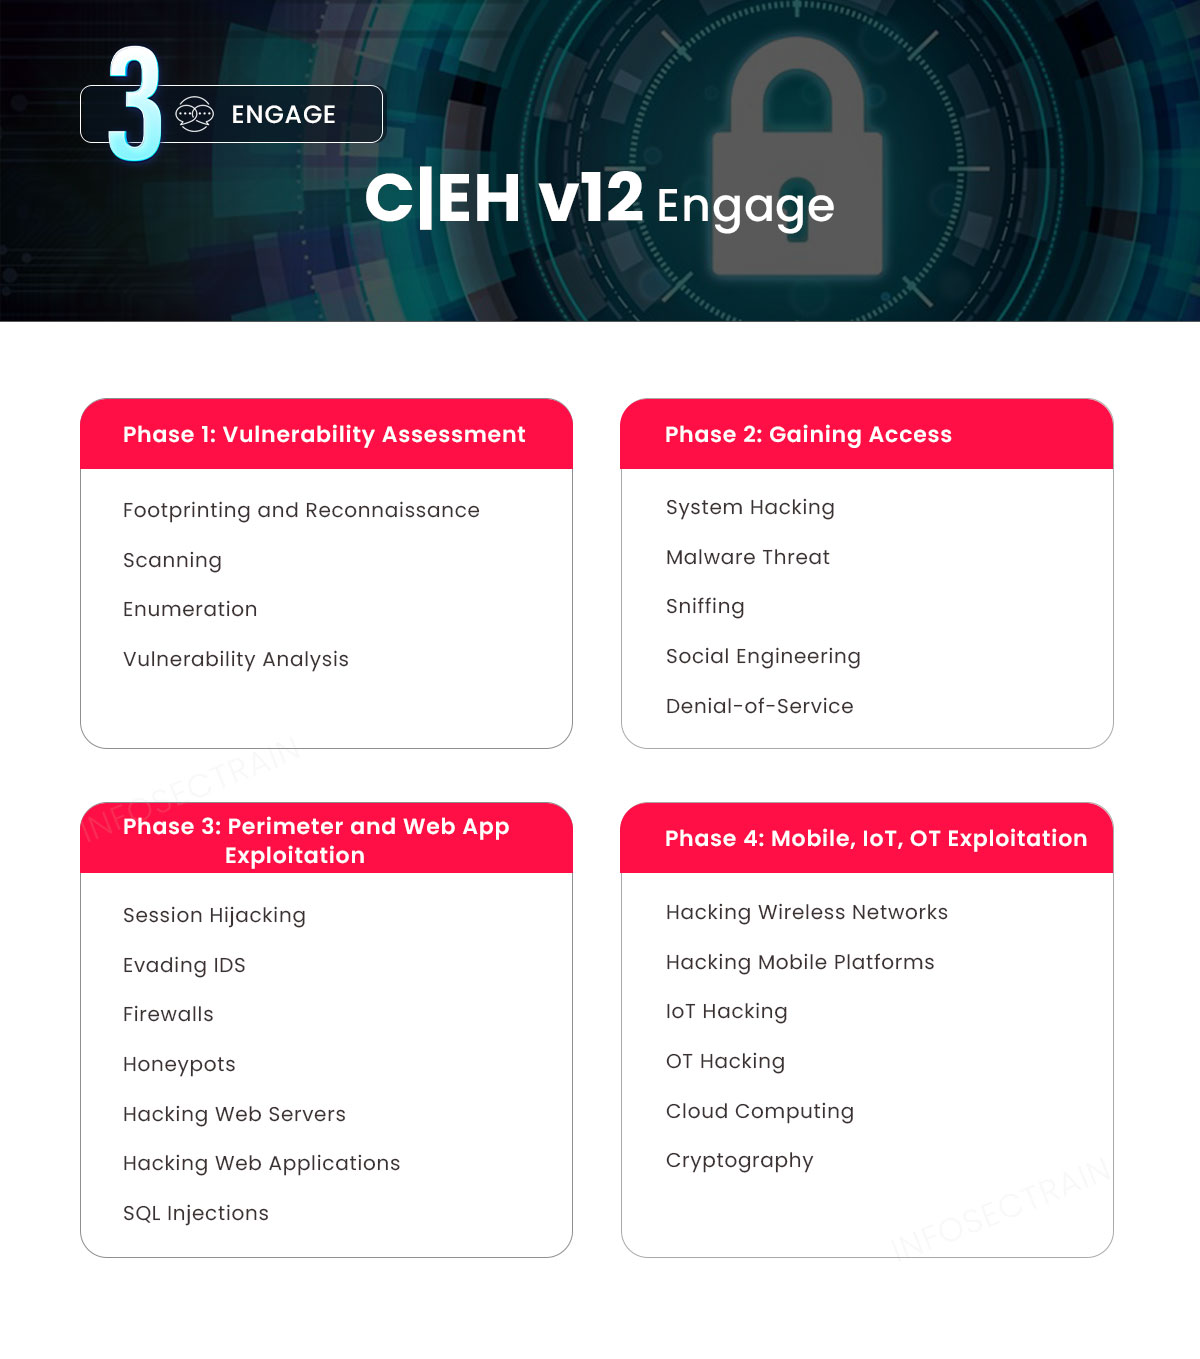 CEH-v12 Engage